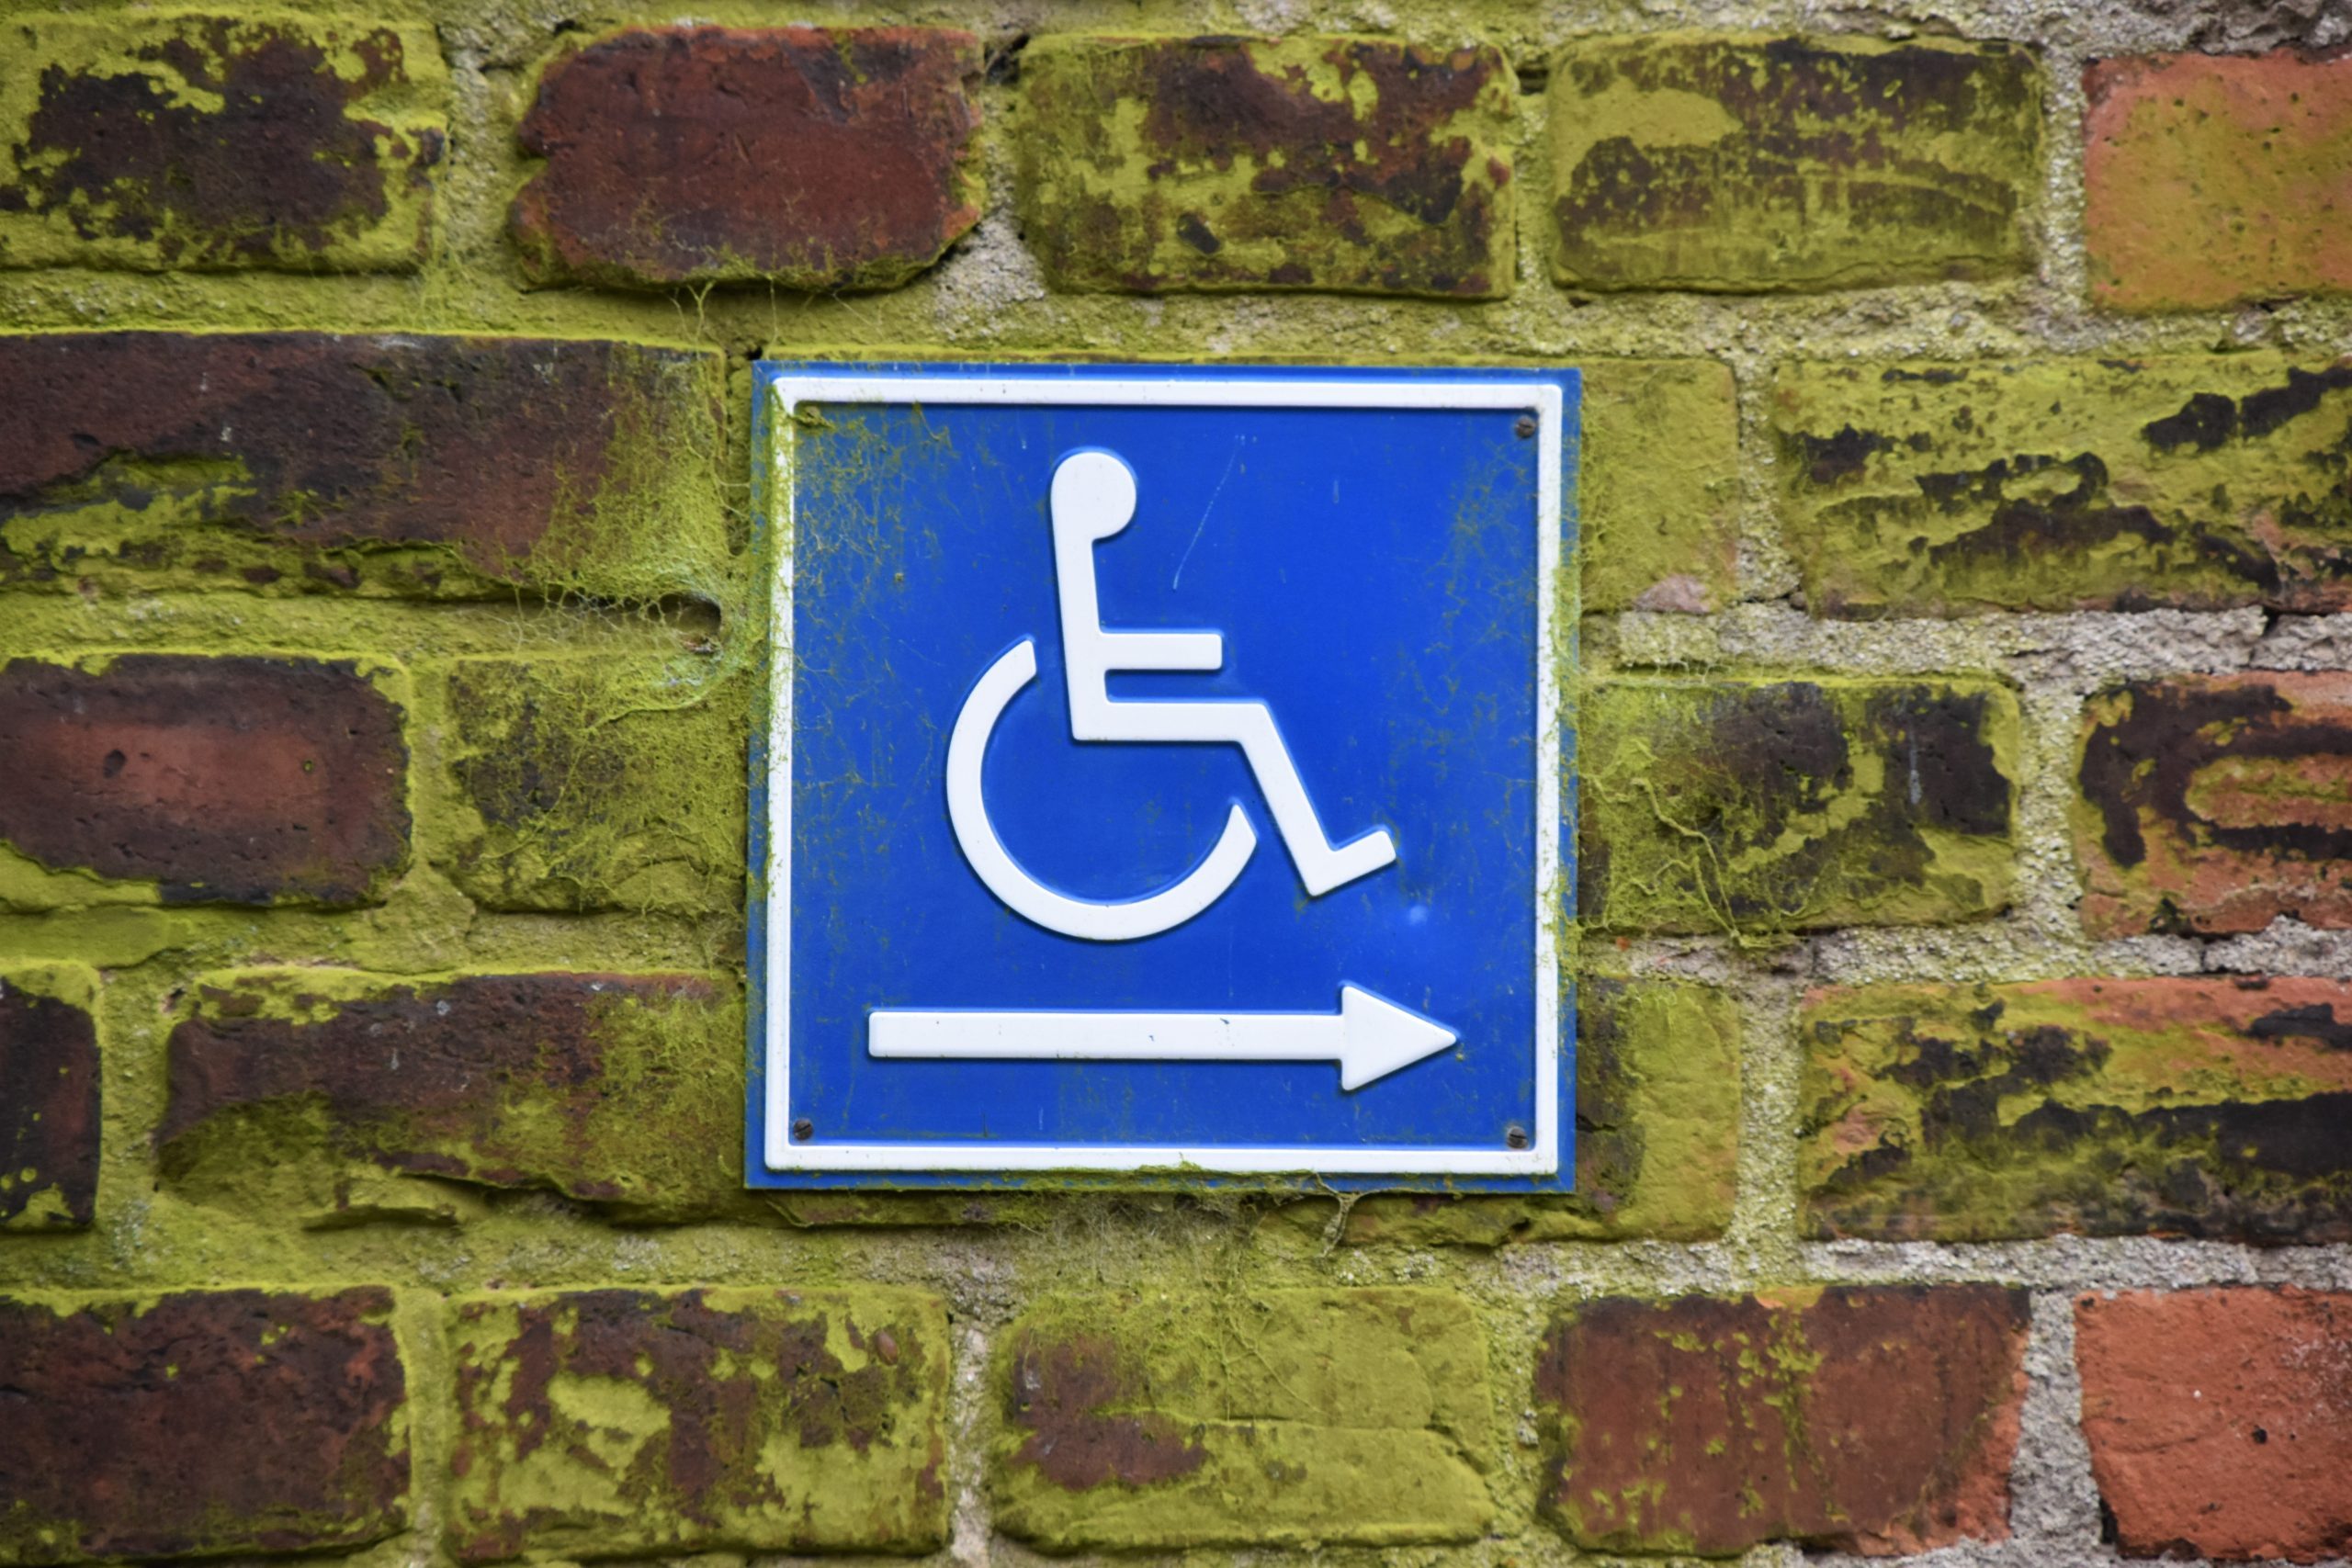 que pendiente o desnivel debe tener una rampa para discapacitados o silla de ruedas